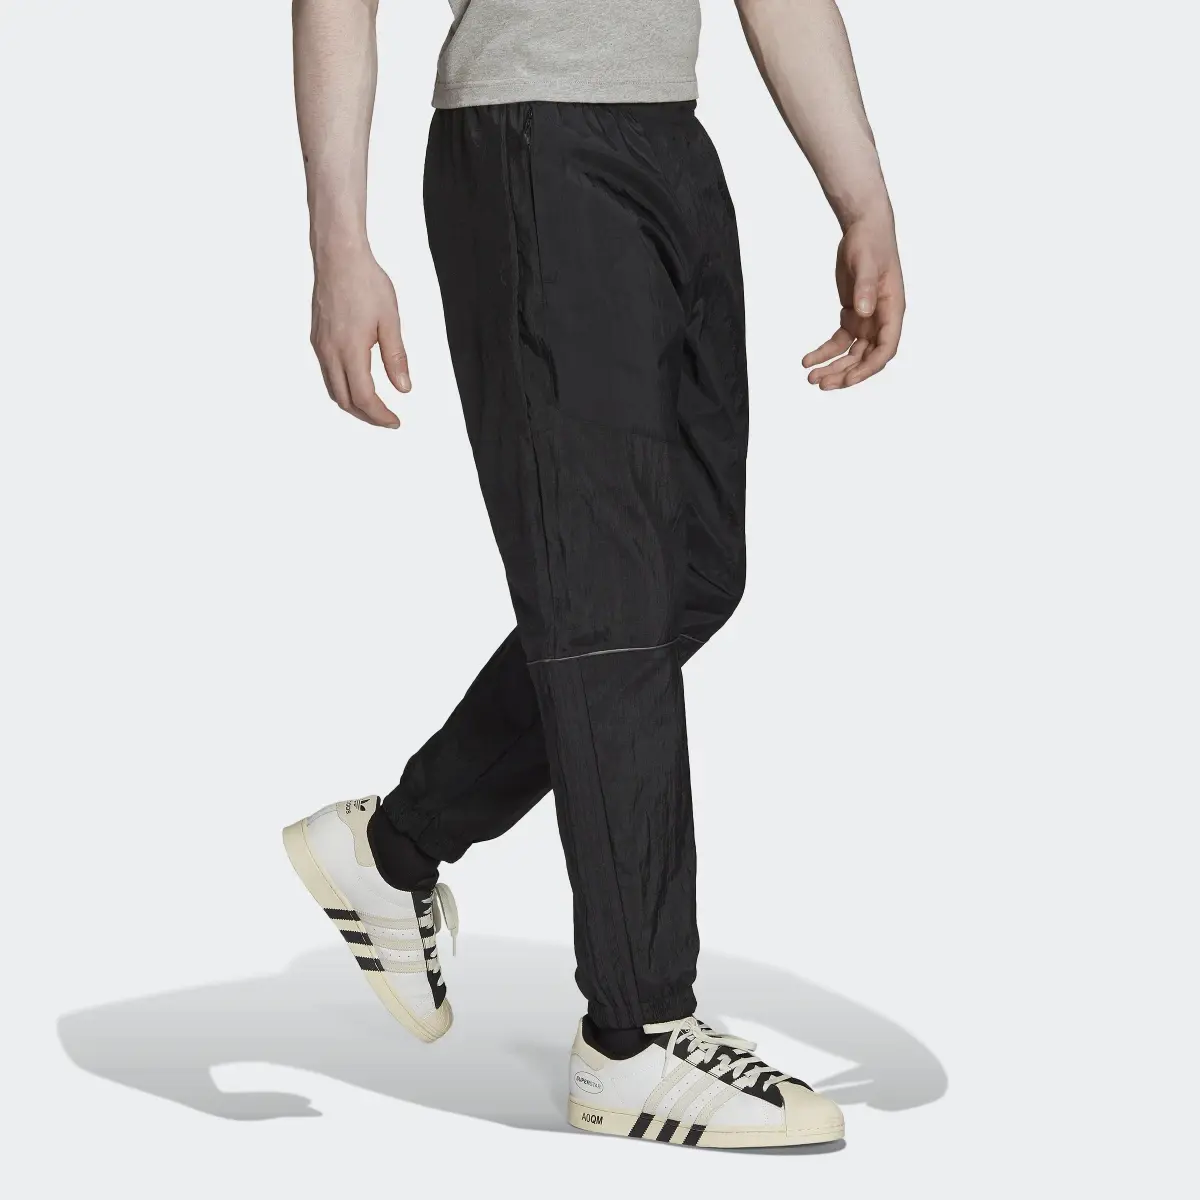 Adidas Pantalón Reveal Material Mix. 3